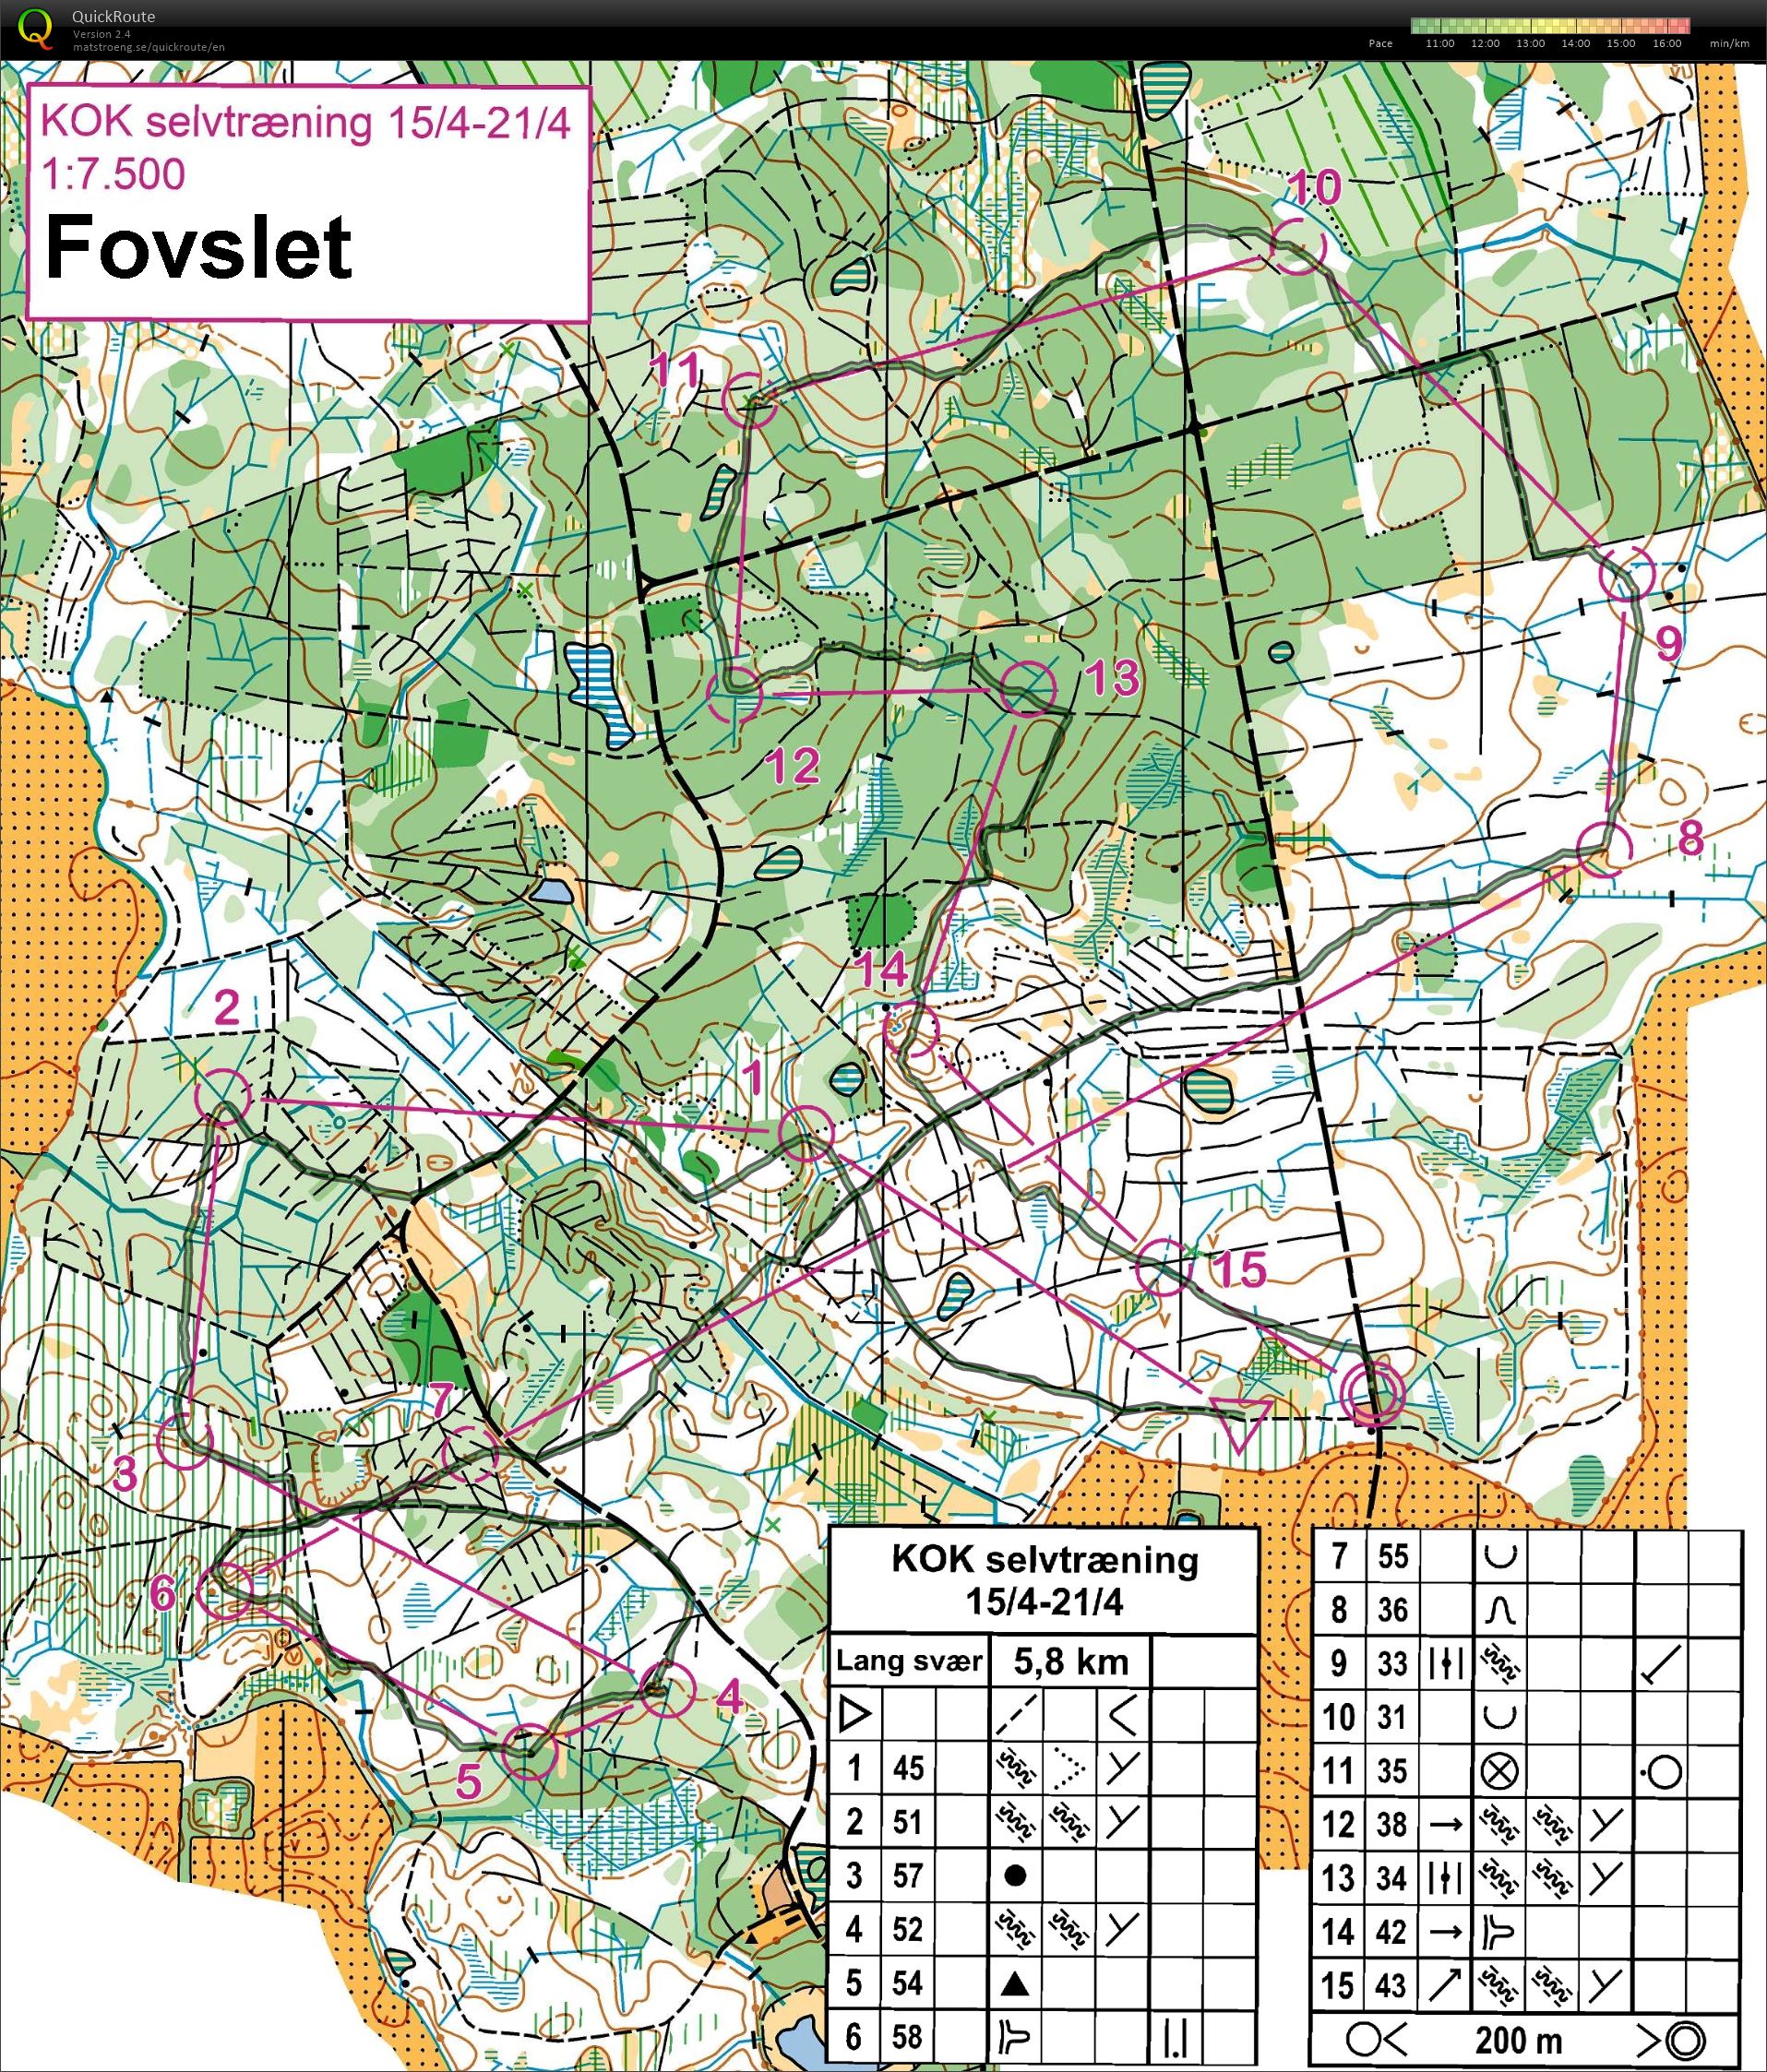 Fovslet (2020-04-17)